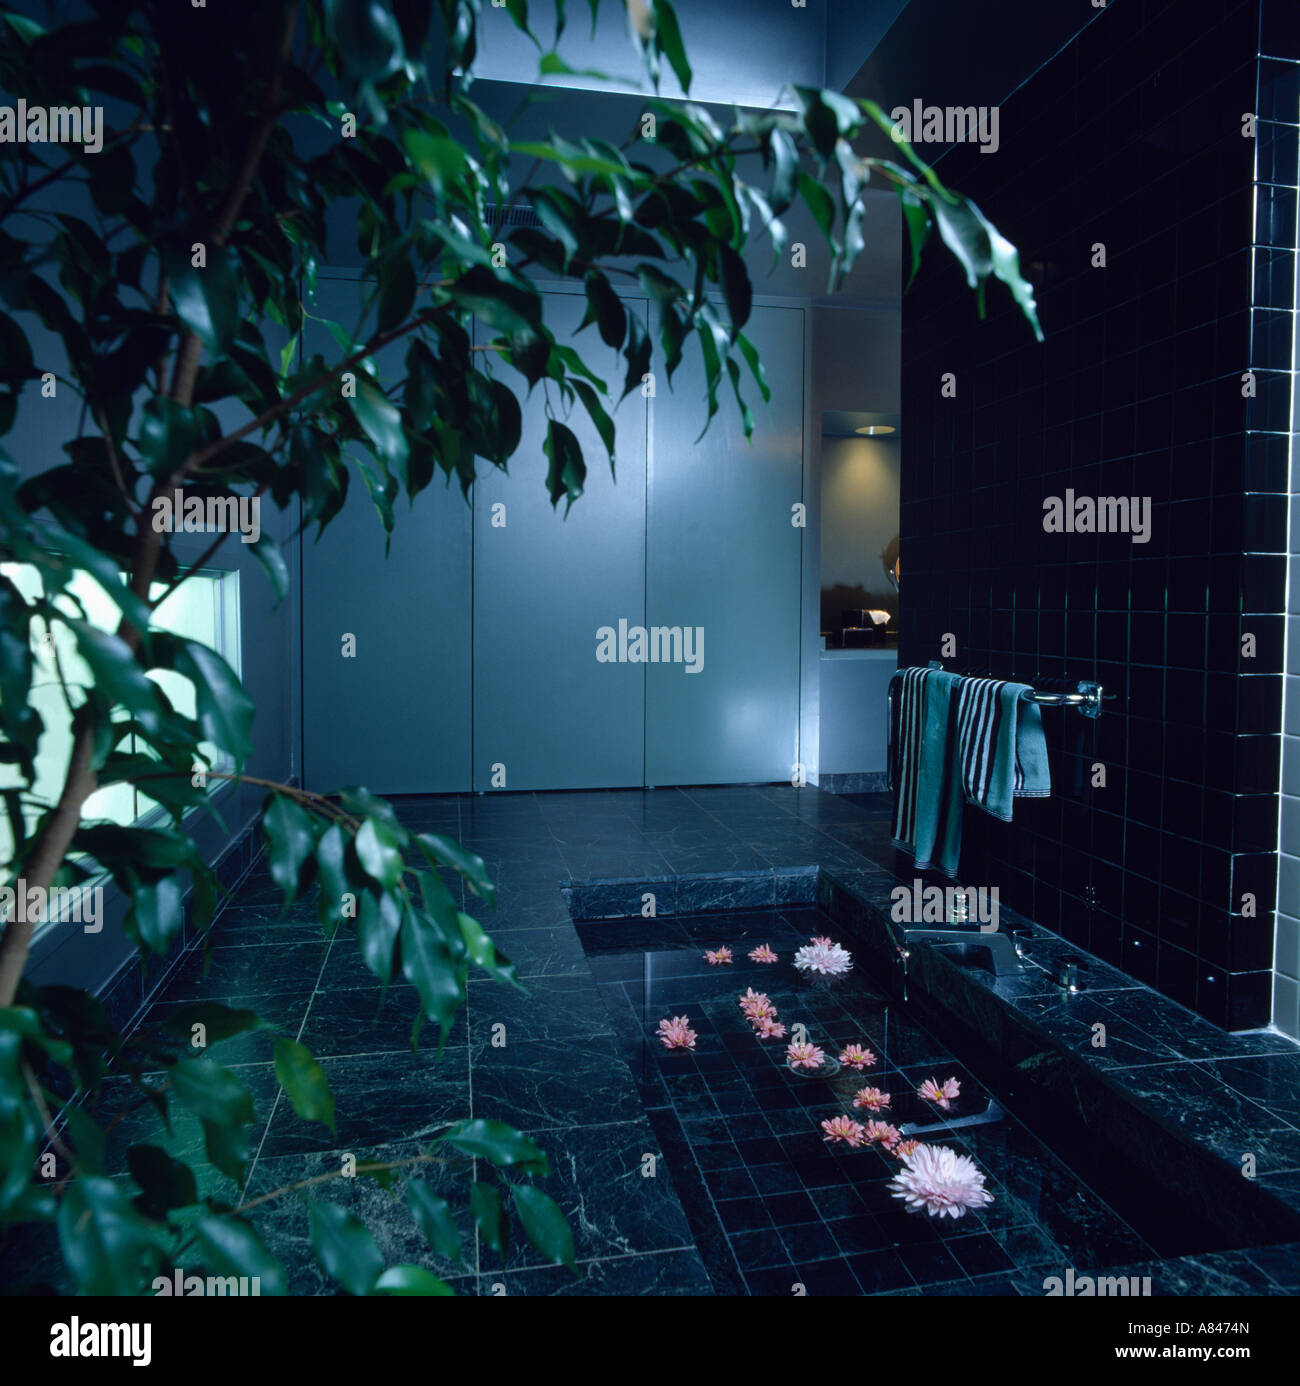 Verde di grandi dimensioni sopra houseplant vasca da bagno incassata con galleggiante petali di rosa in bianco e nero degli anni ottanta bagno Foto Stock